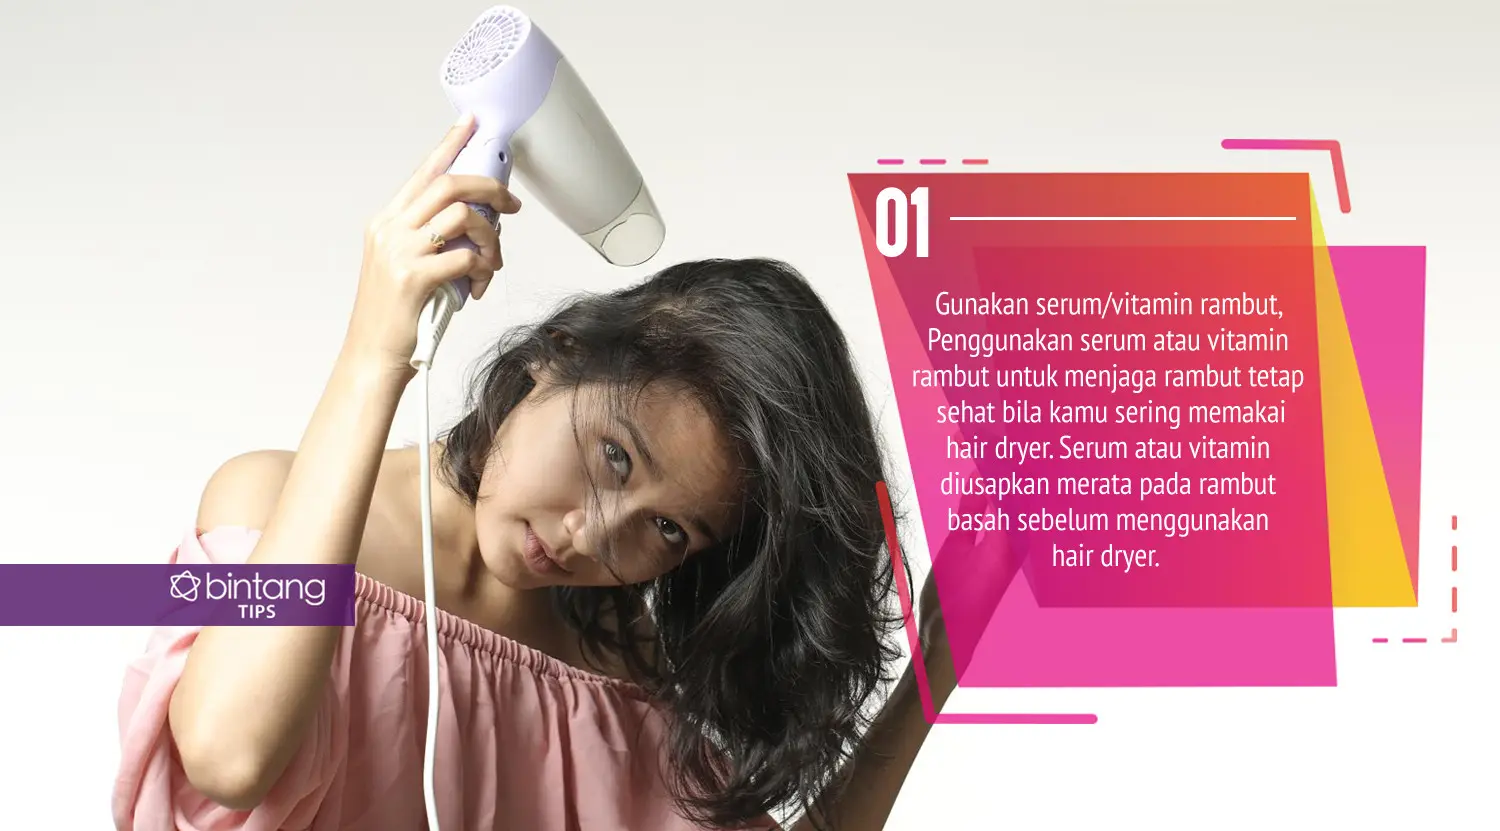 Ilustrasi memakai hair dryer. (Foto: Daniel Kampua/Bintang.com, Digital Imaging: Nurman Abdul Hakim/Bintang.com)